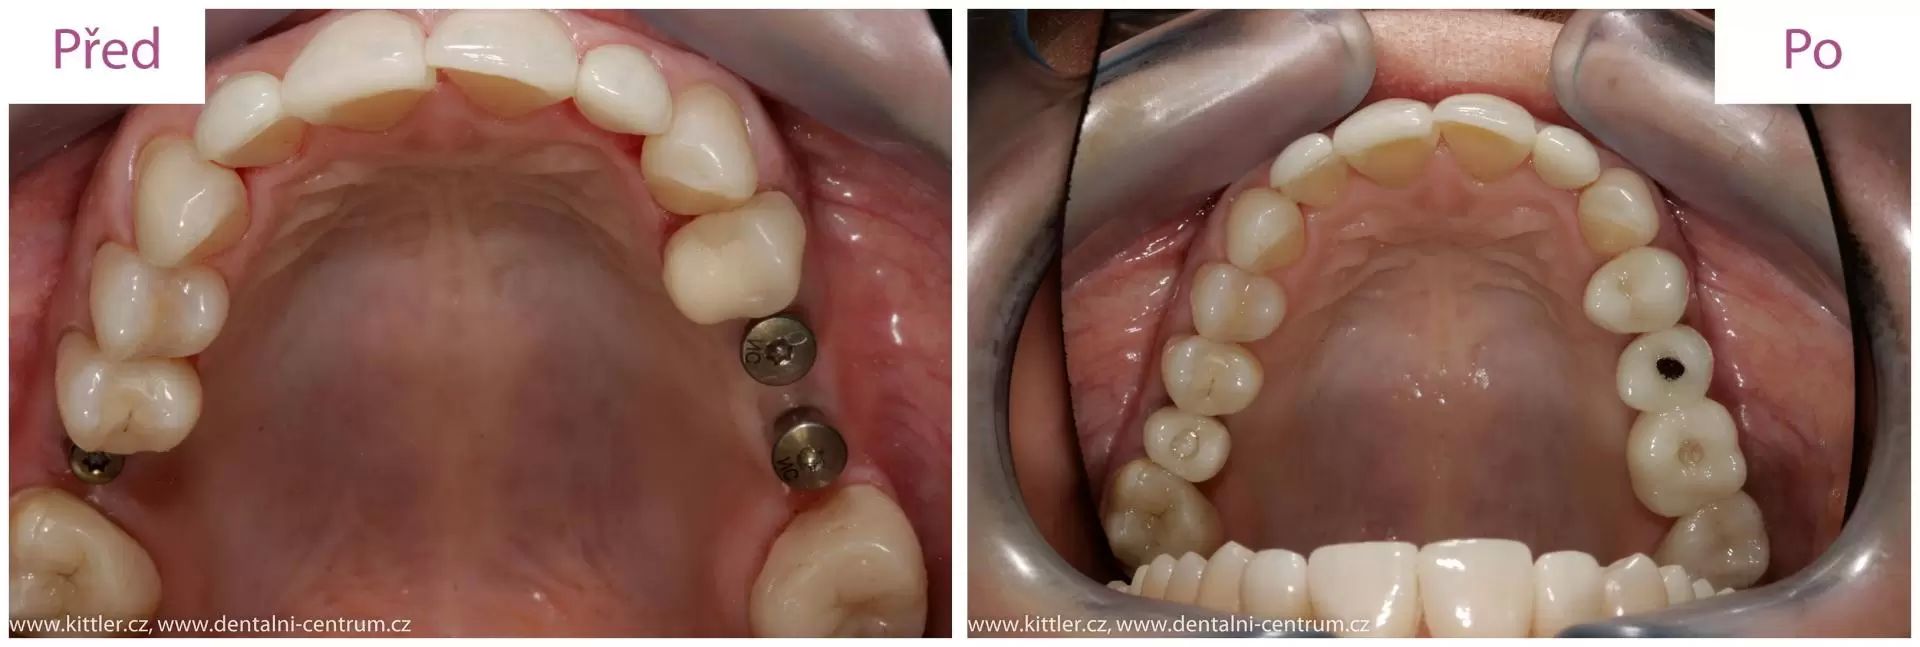 zubni implantaty 6